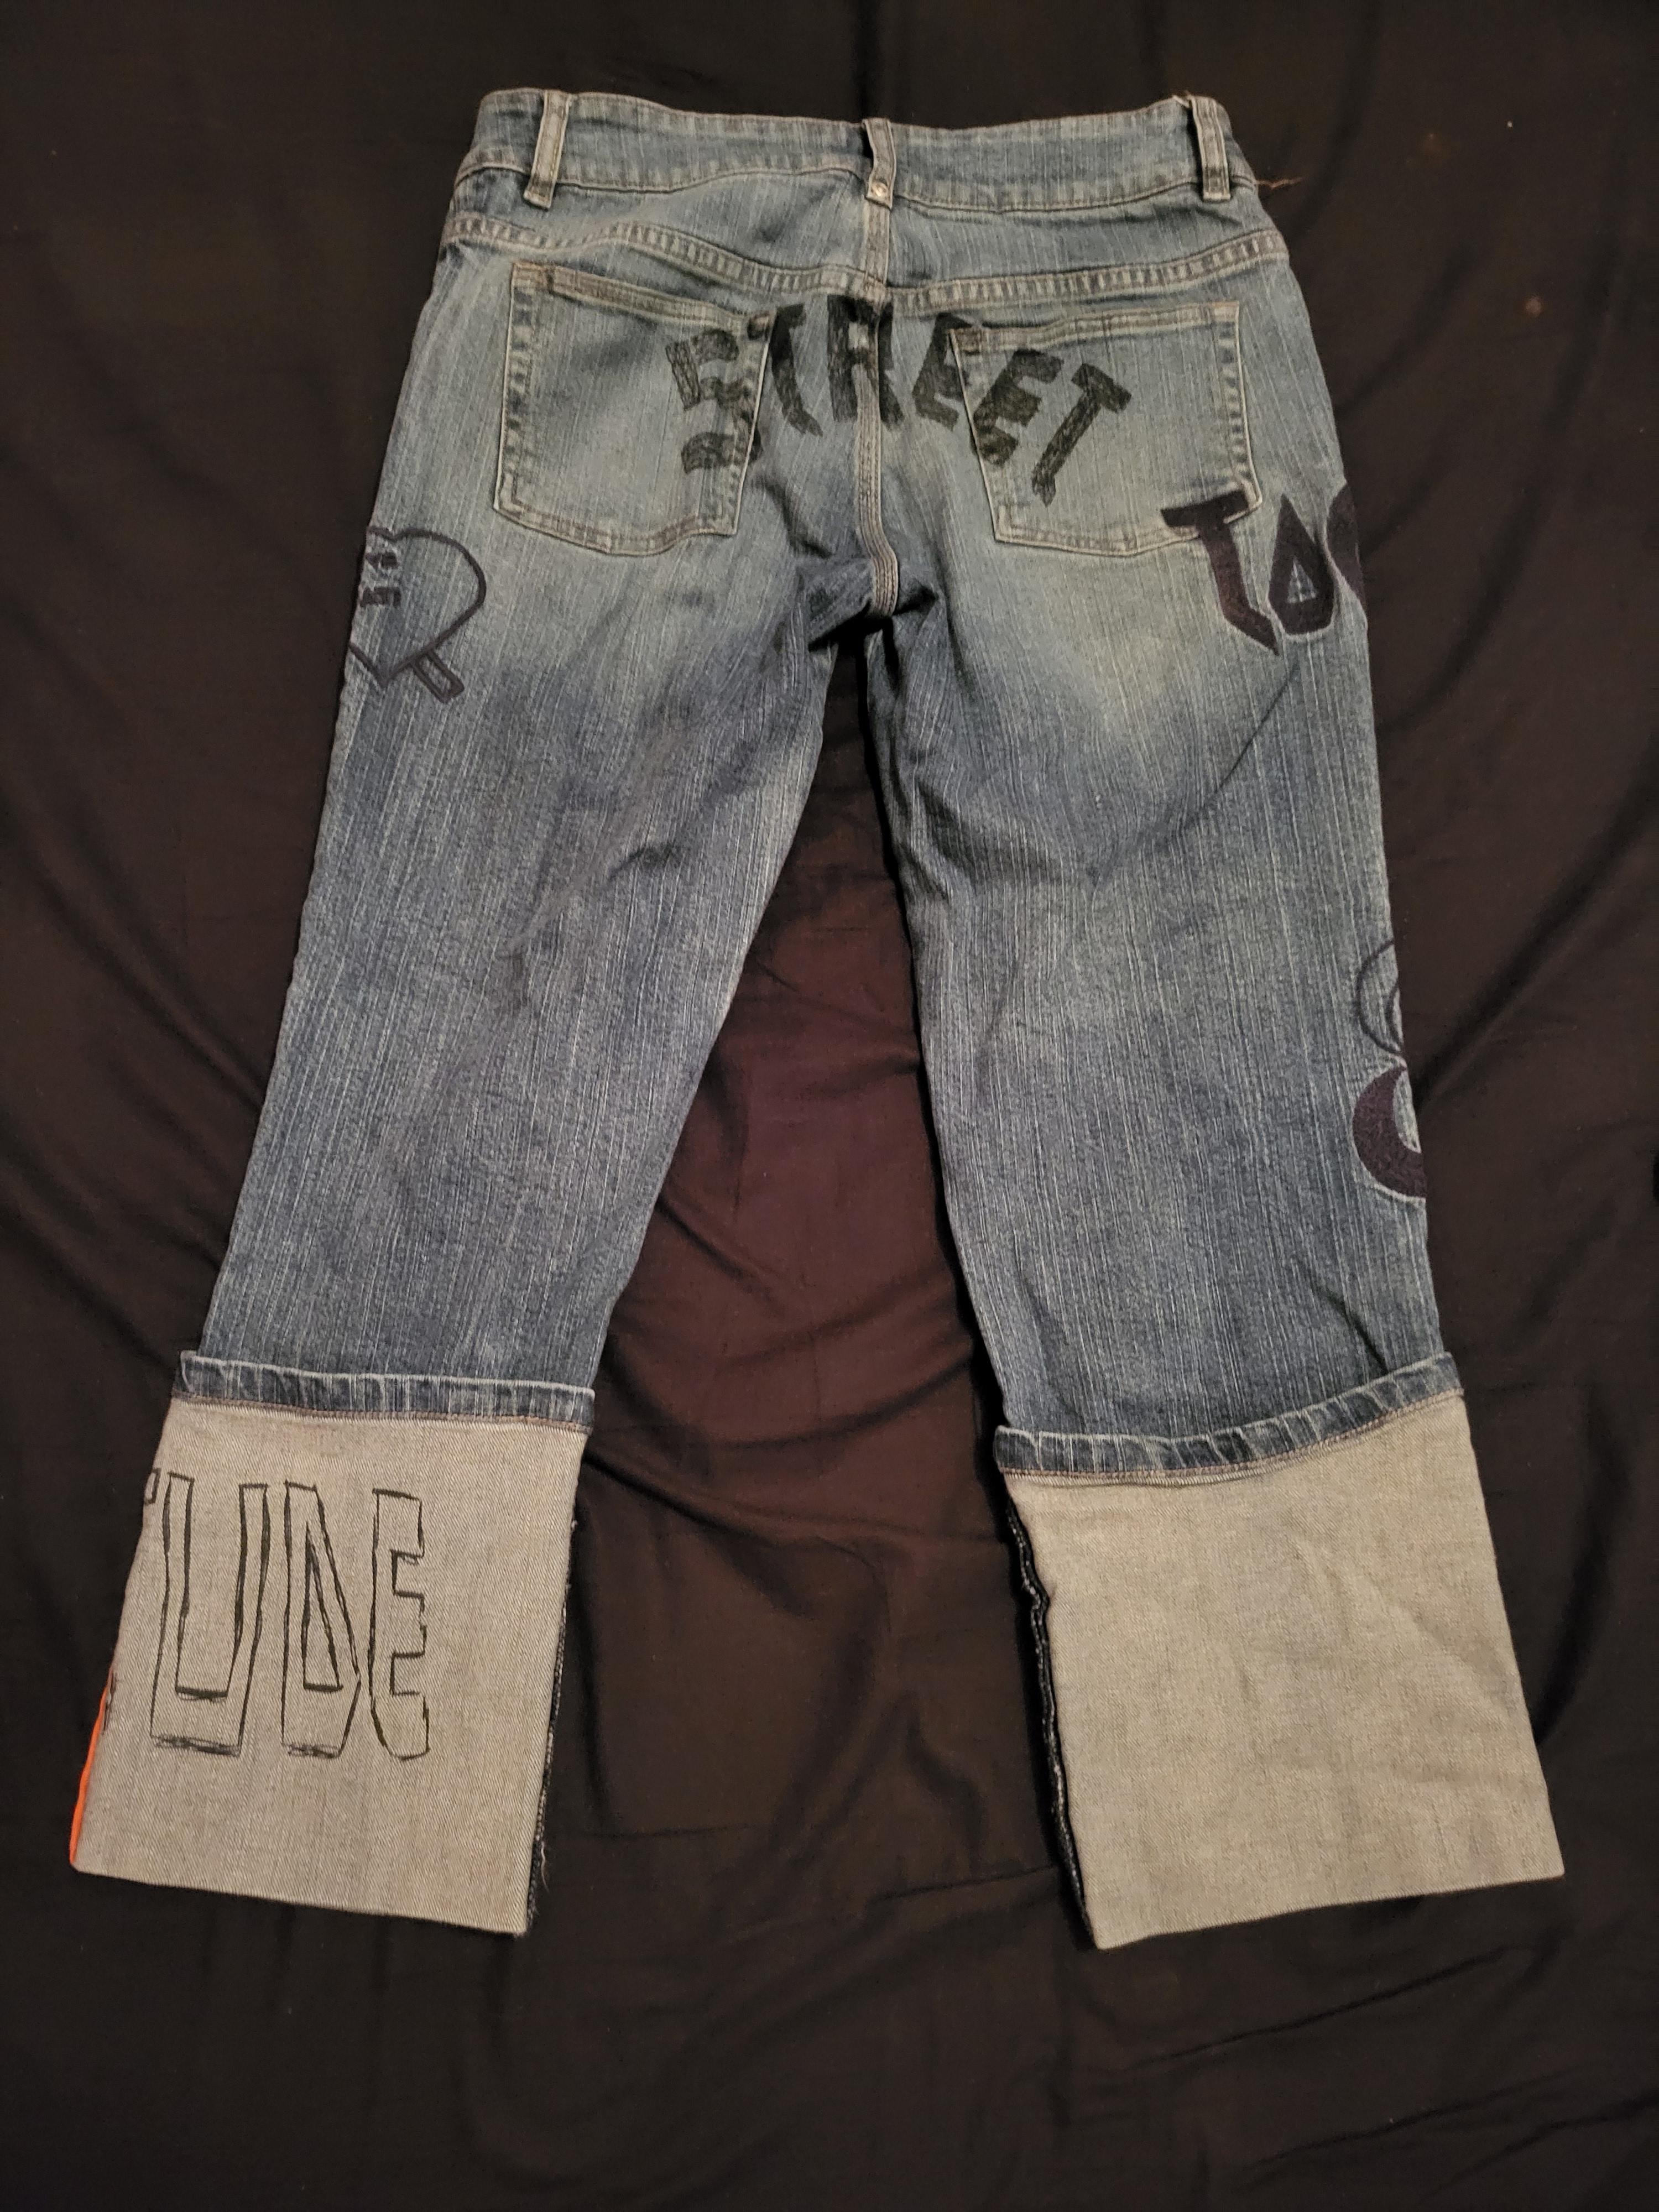 troc de troc jeans court image 1